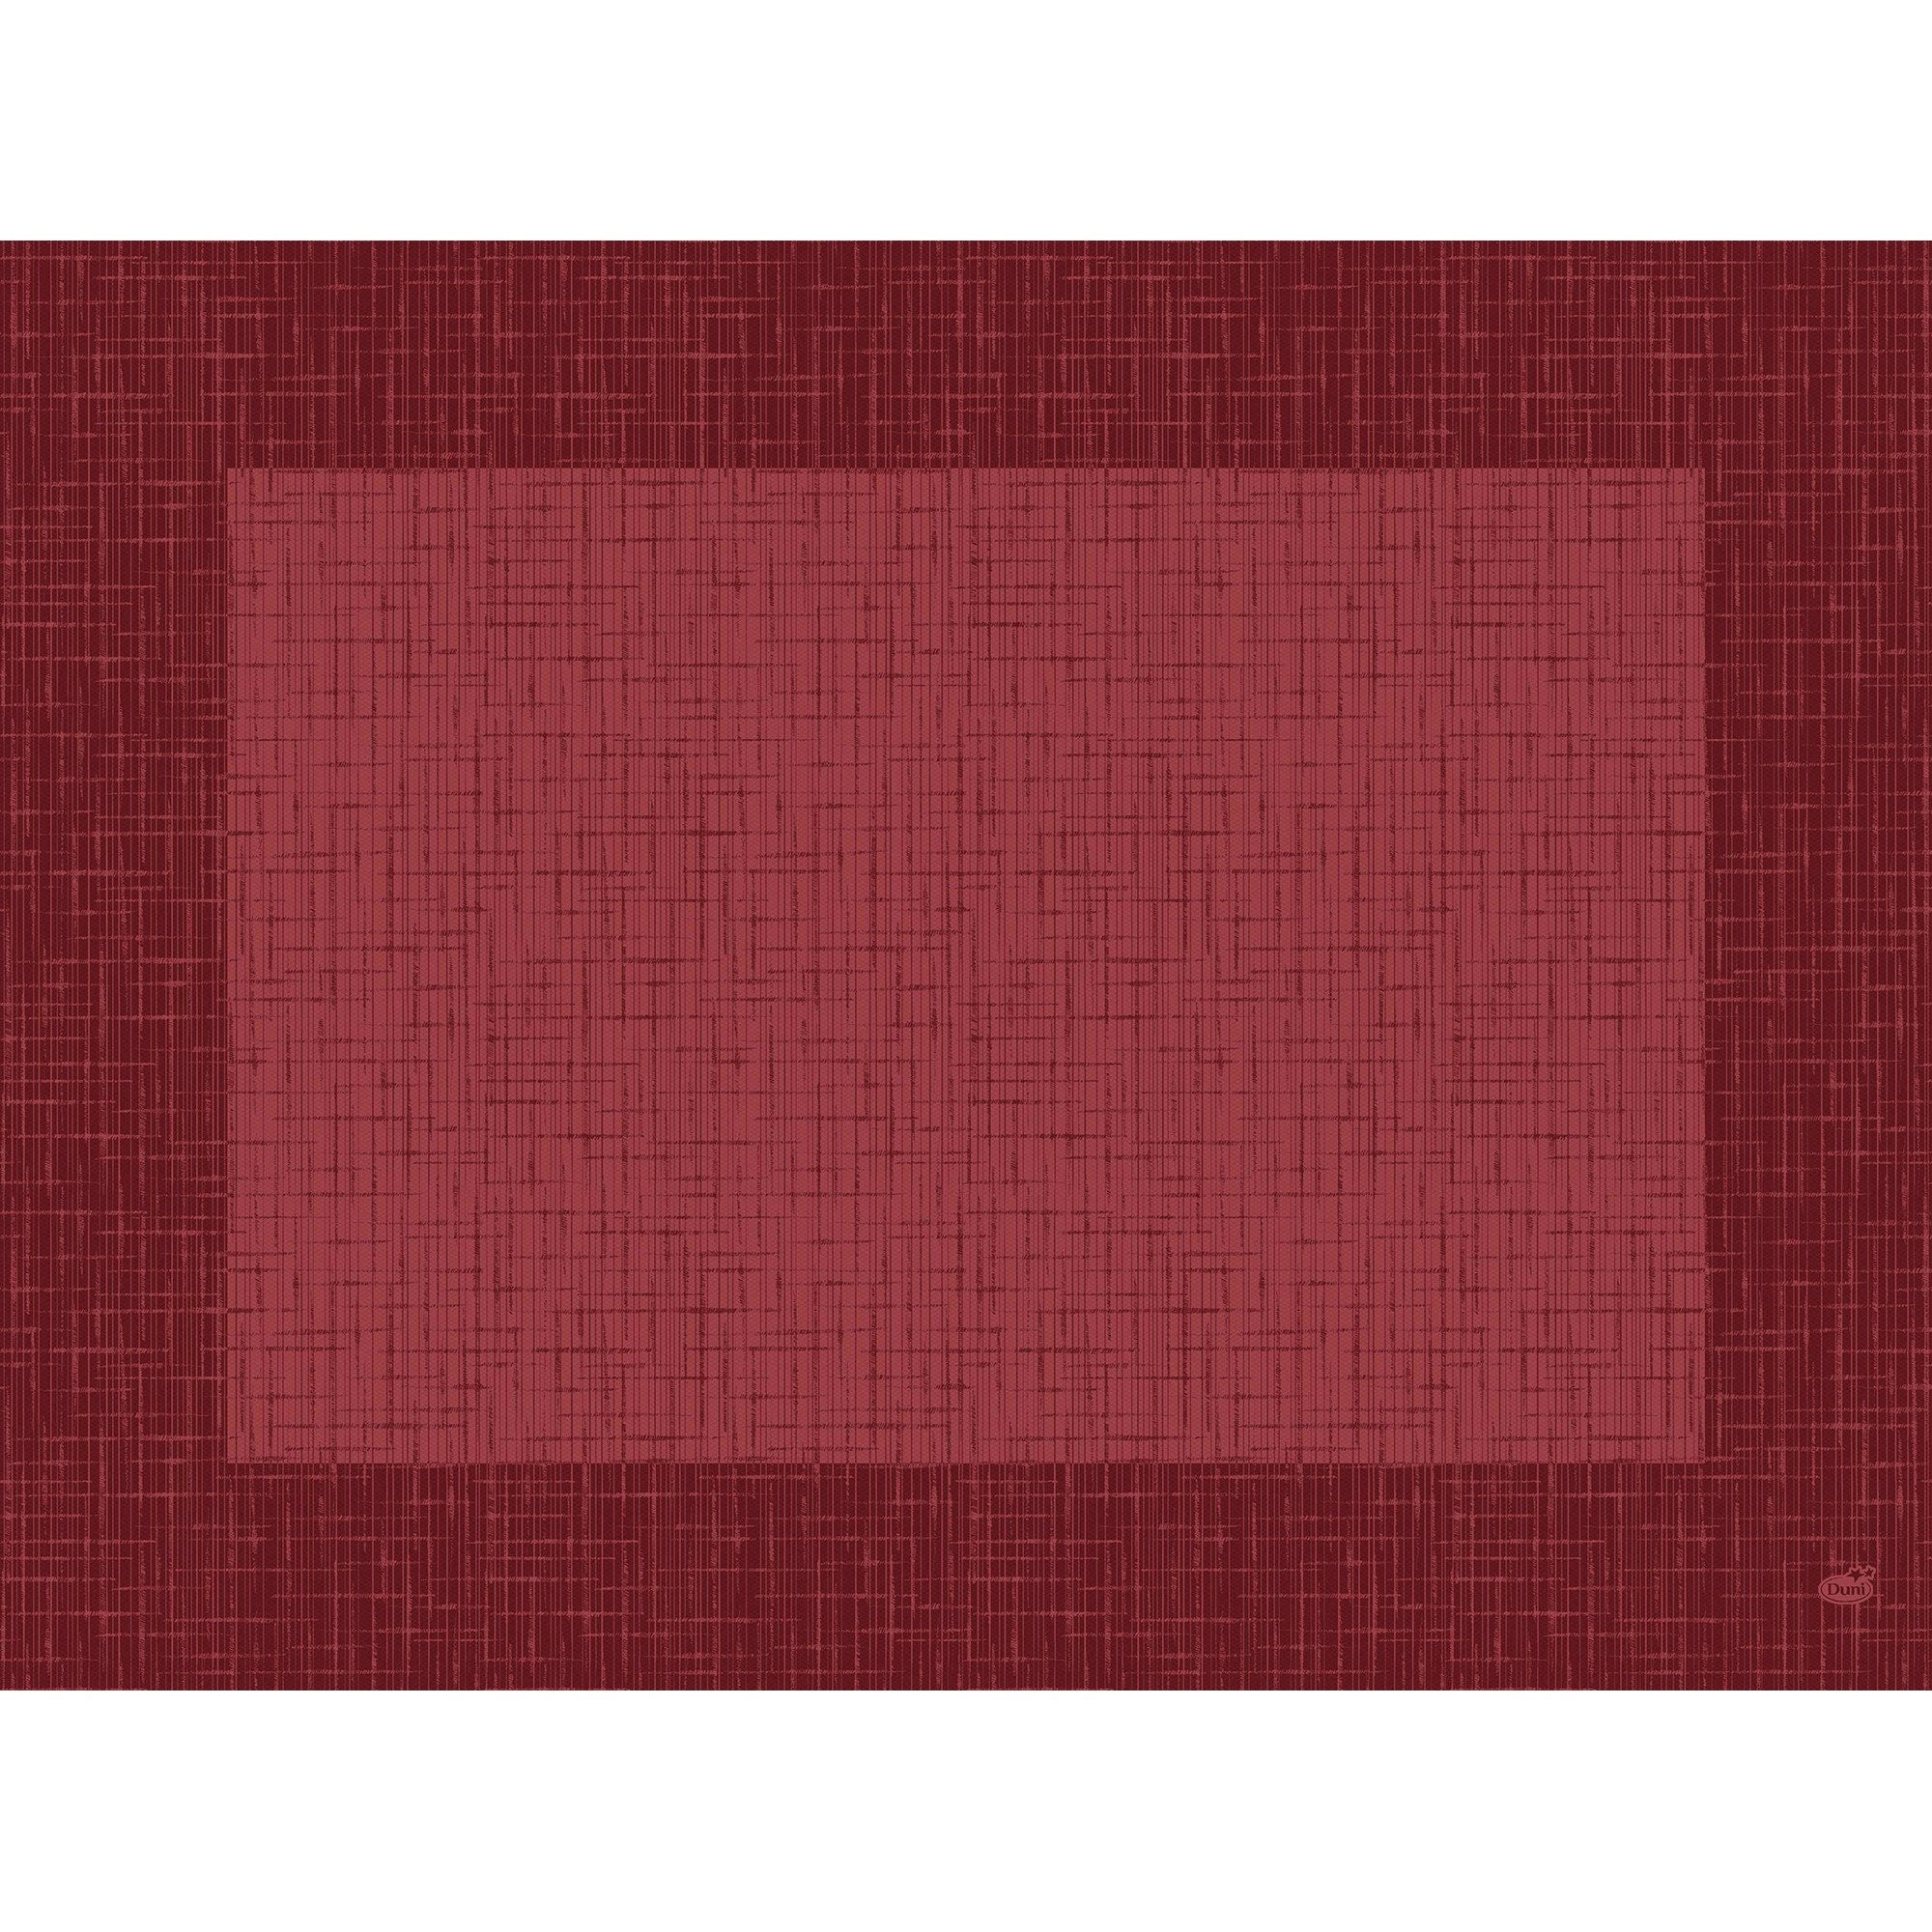 Bordbrikke d-cel linnea v.rød   100stk